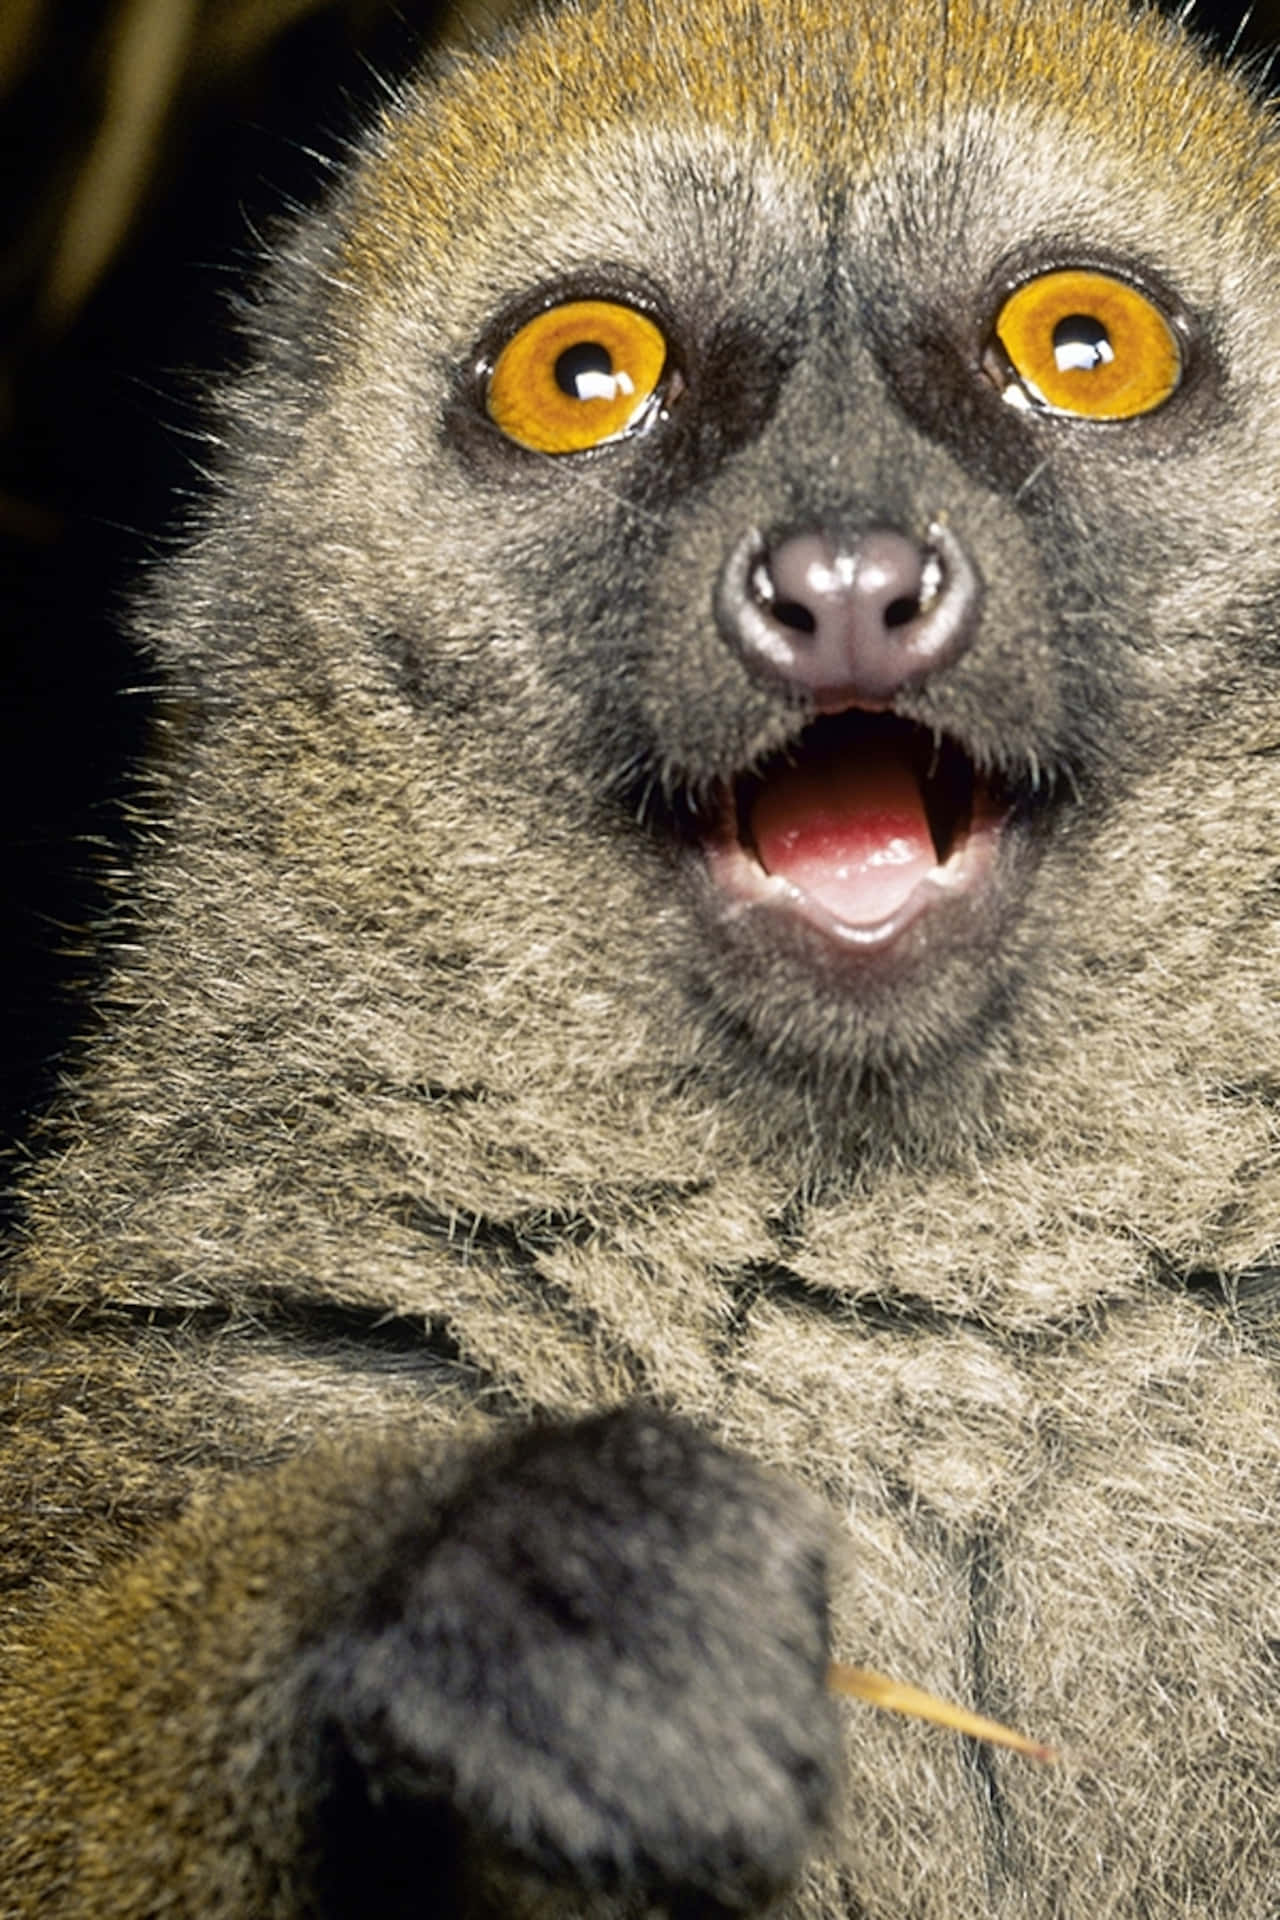 Roligadjurbilder På En Chockad Lemur I Närbild.